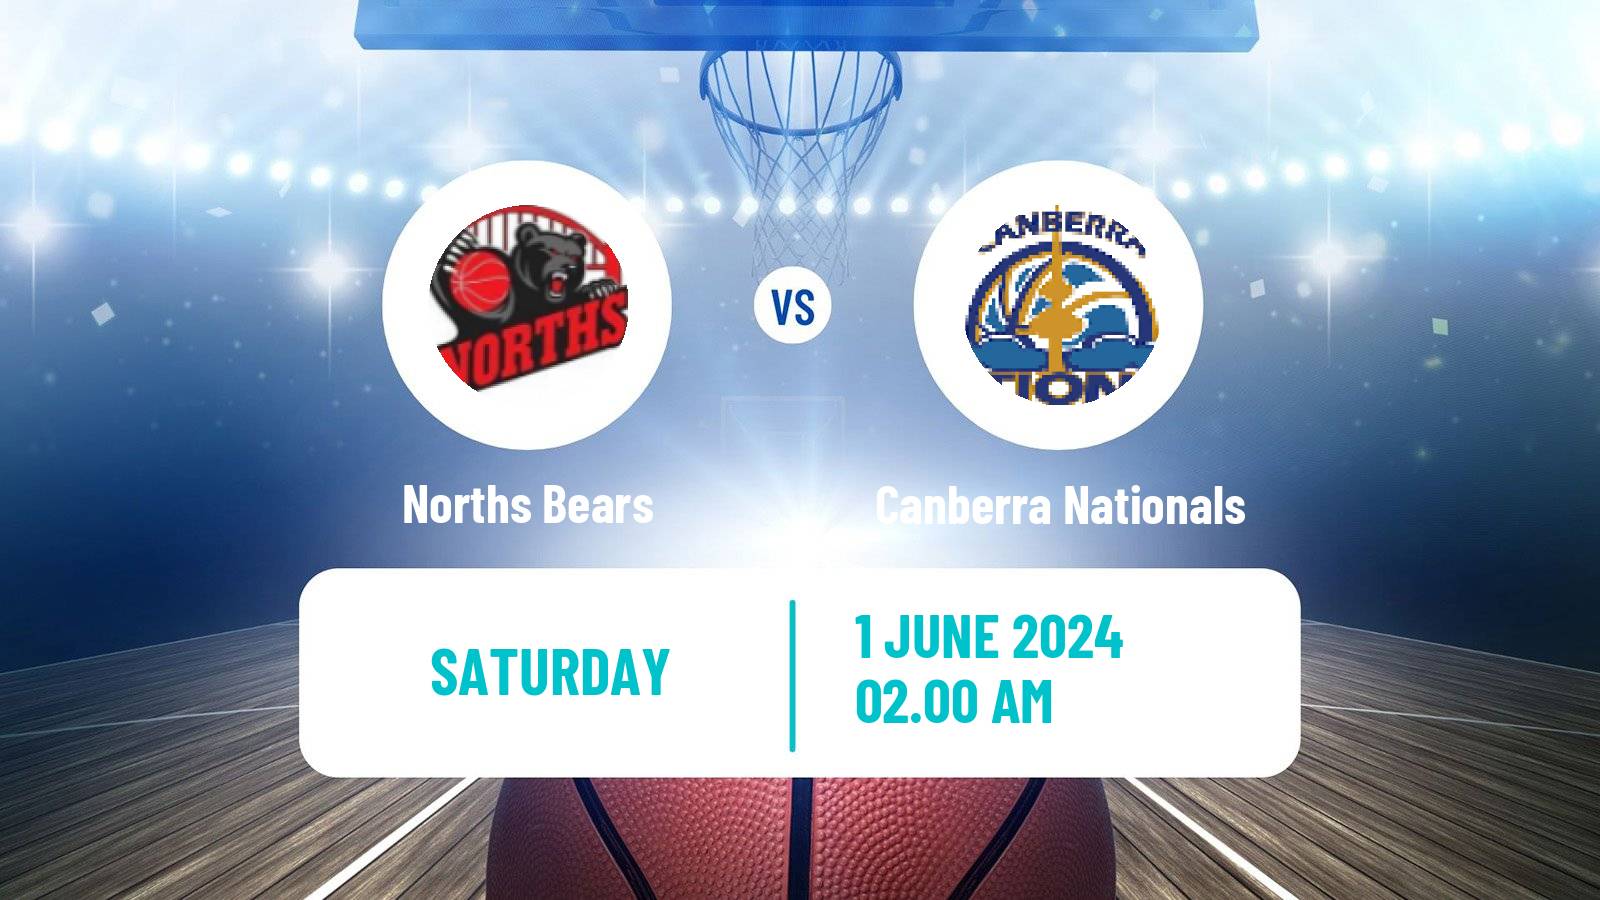 Basketball Australian NBL1 East Women Norths Bears - Canberra Nationals